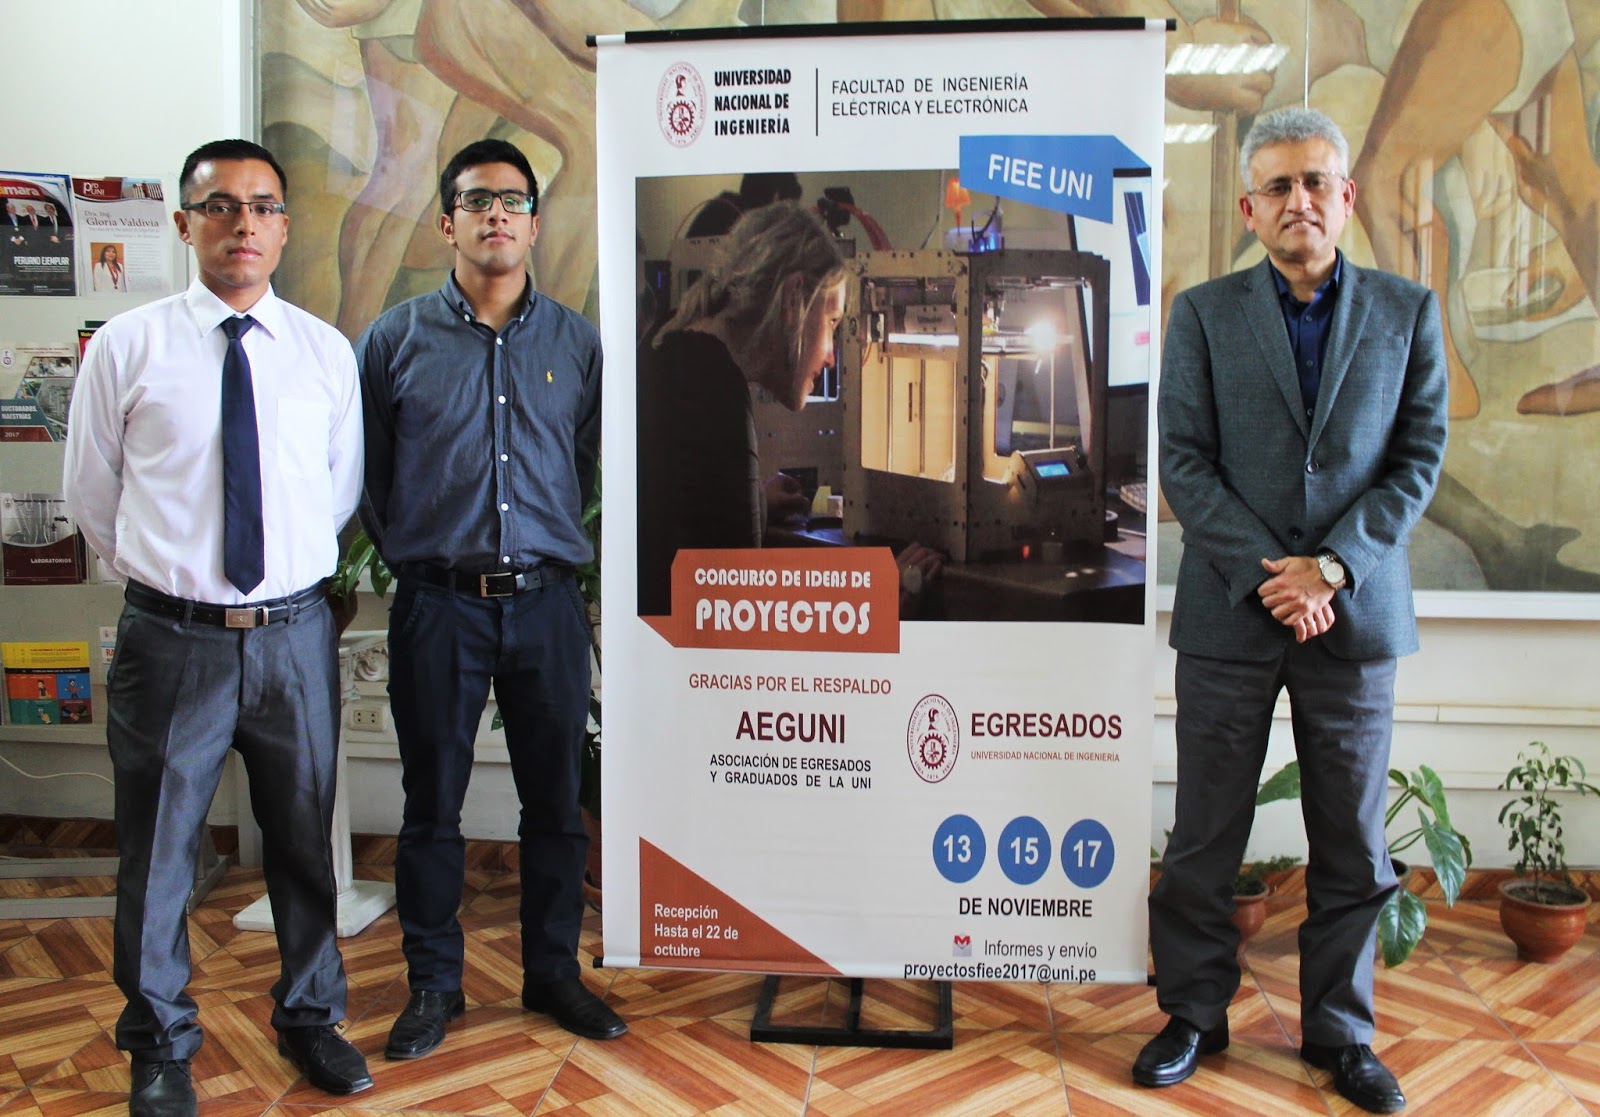 Centro de Estudiantes de la FIEE – UNI invita a participar al “Concurso de Ideas de Proyectos”